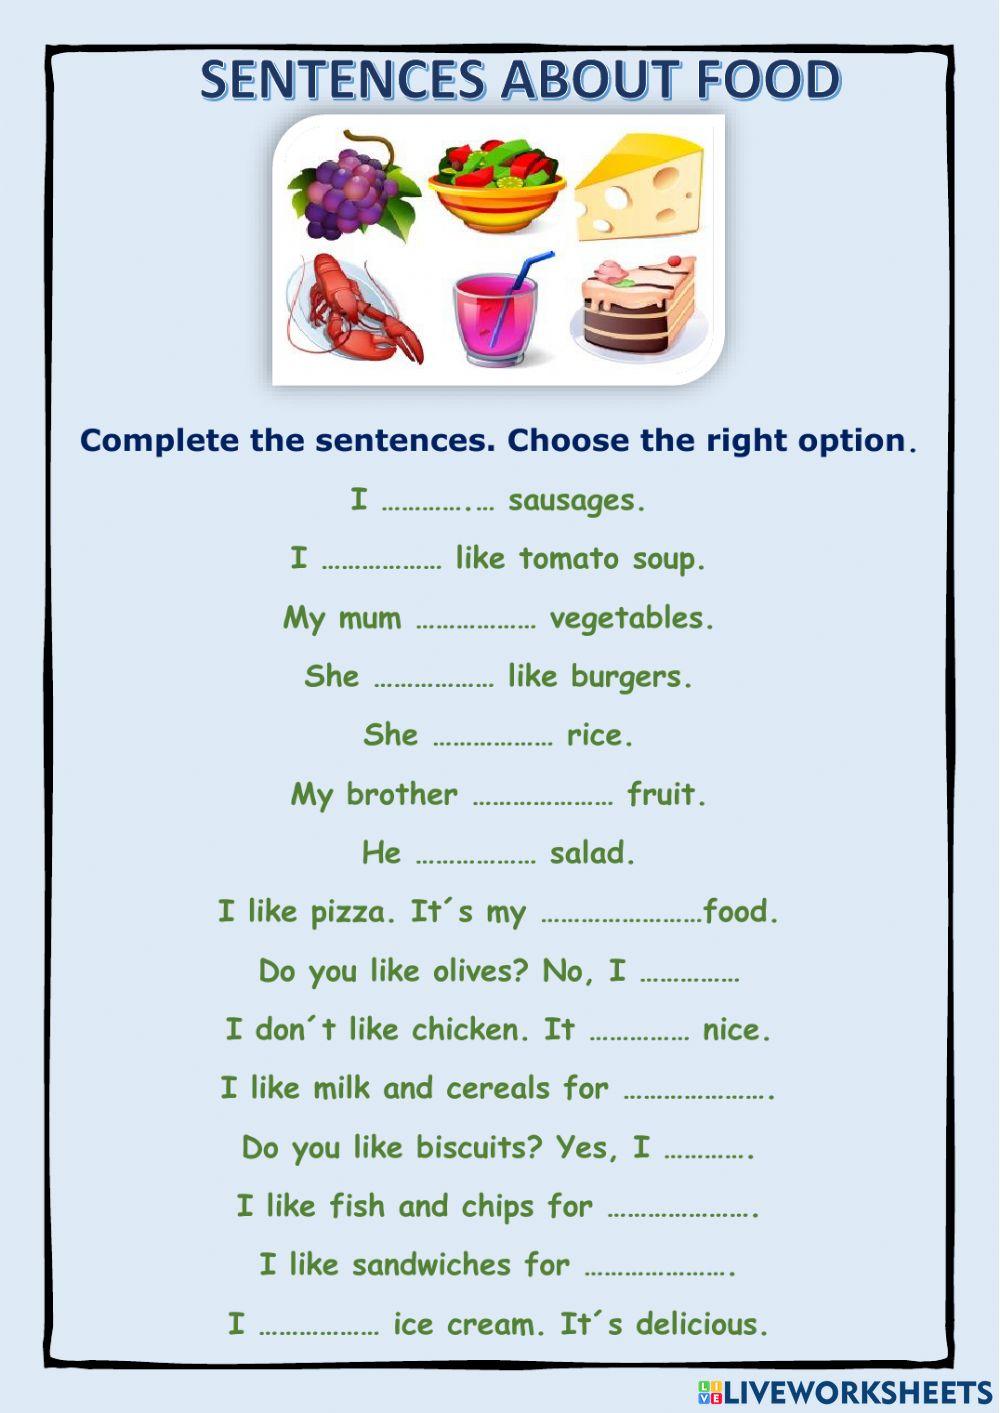 Sentences about food